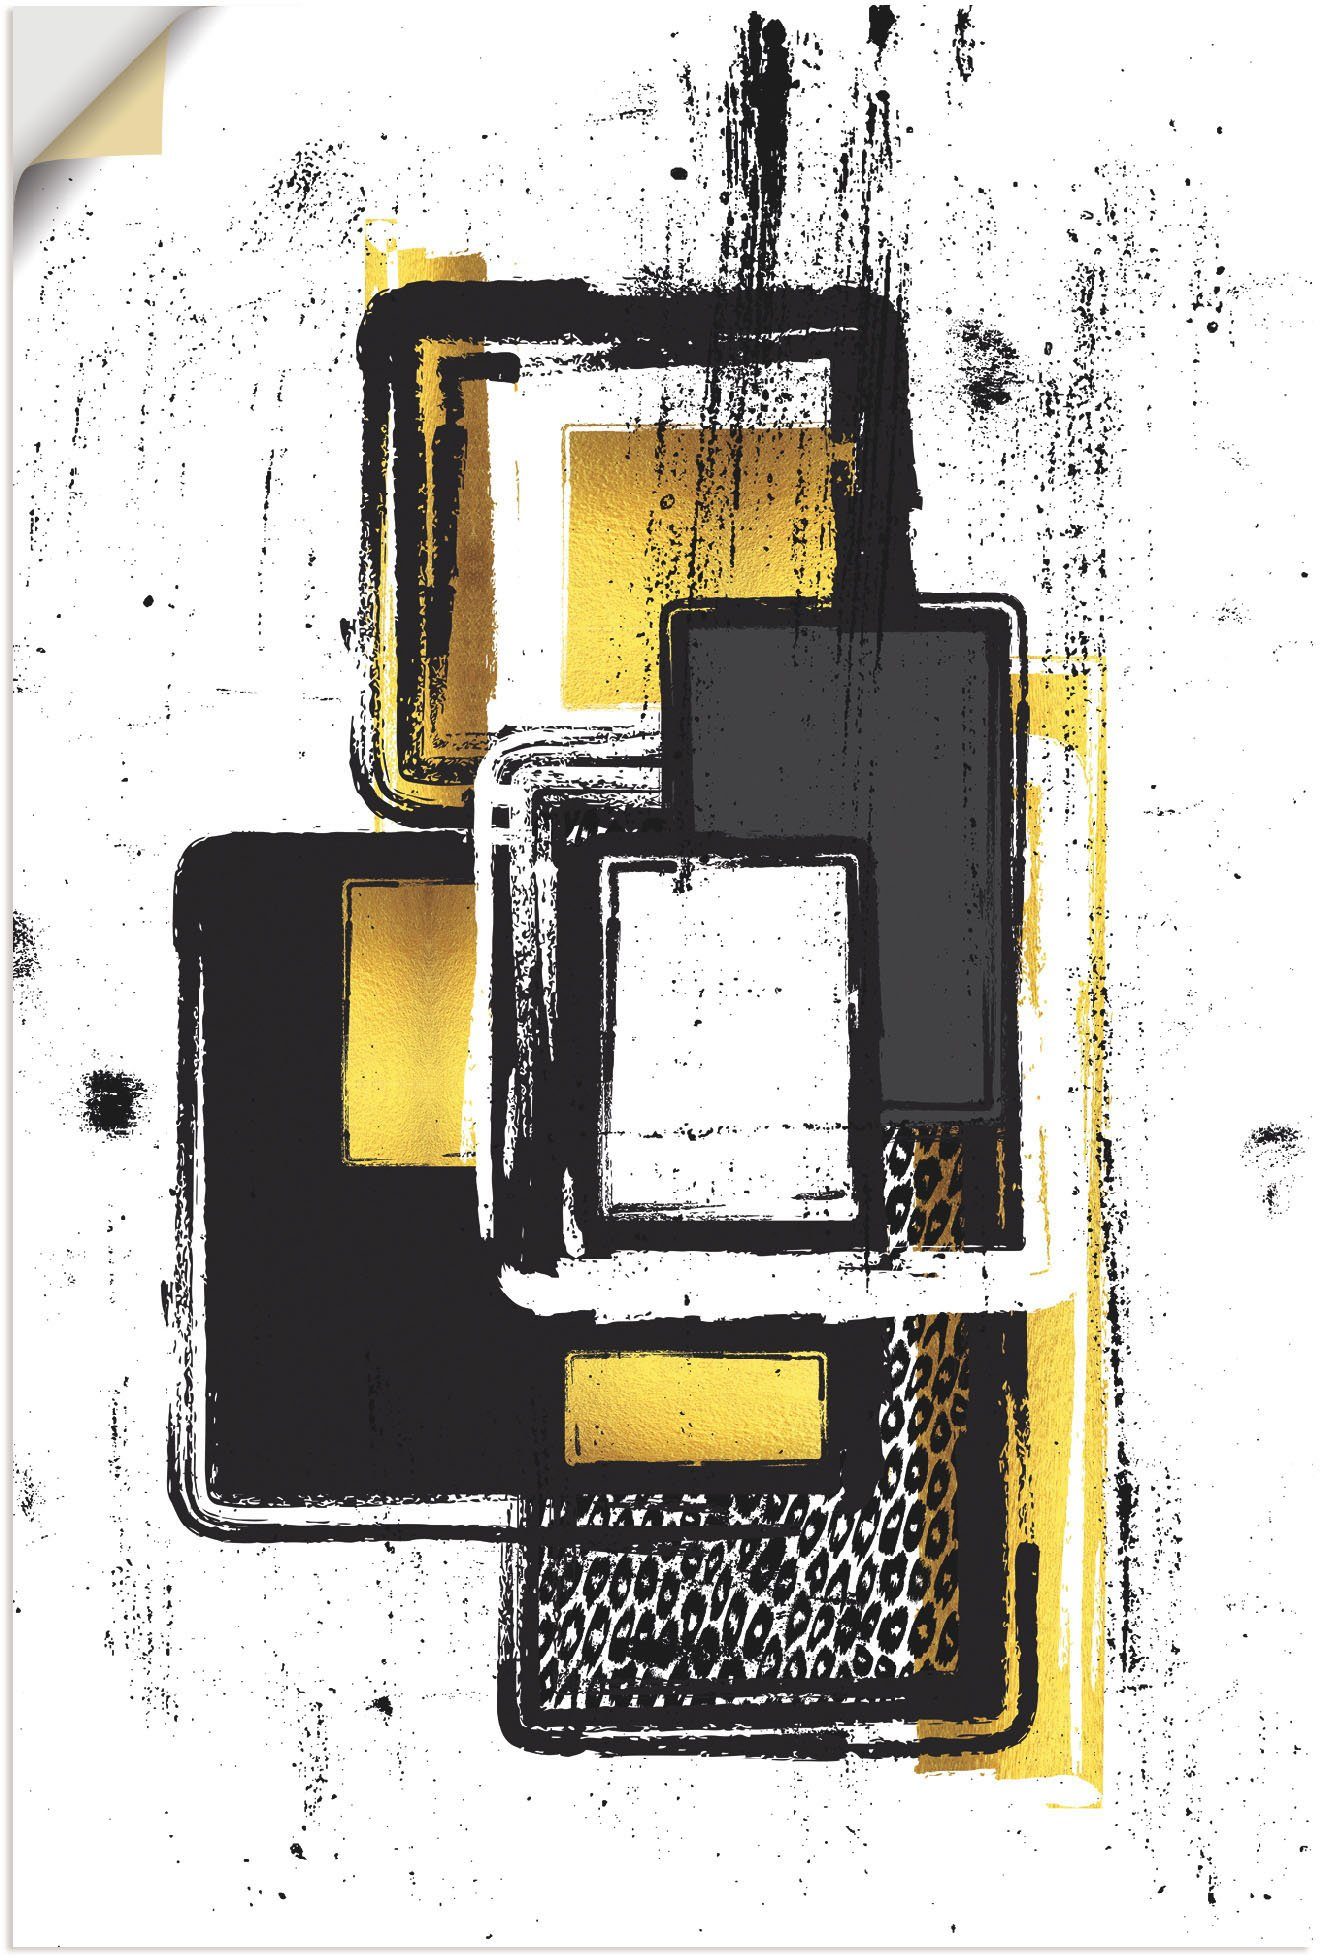 Artland Artprint Abstrakte Malerei Nr. 3 gold in vele afmetingen & productsoorten - artprint van aluminium / artprint voor buiten, artprint op linnen, poster, muursticker / wandfol